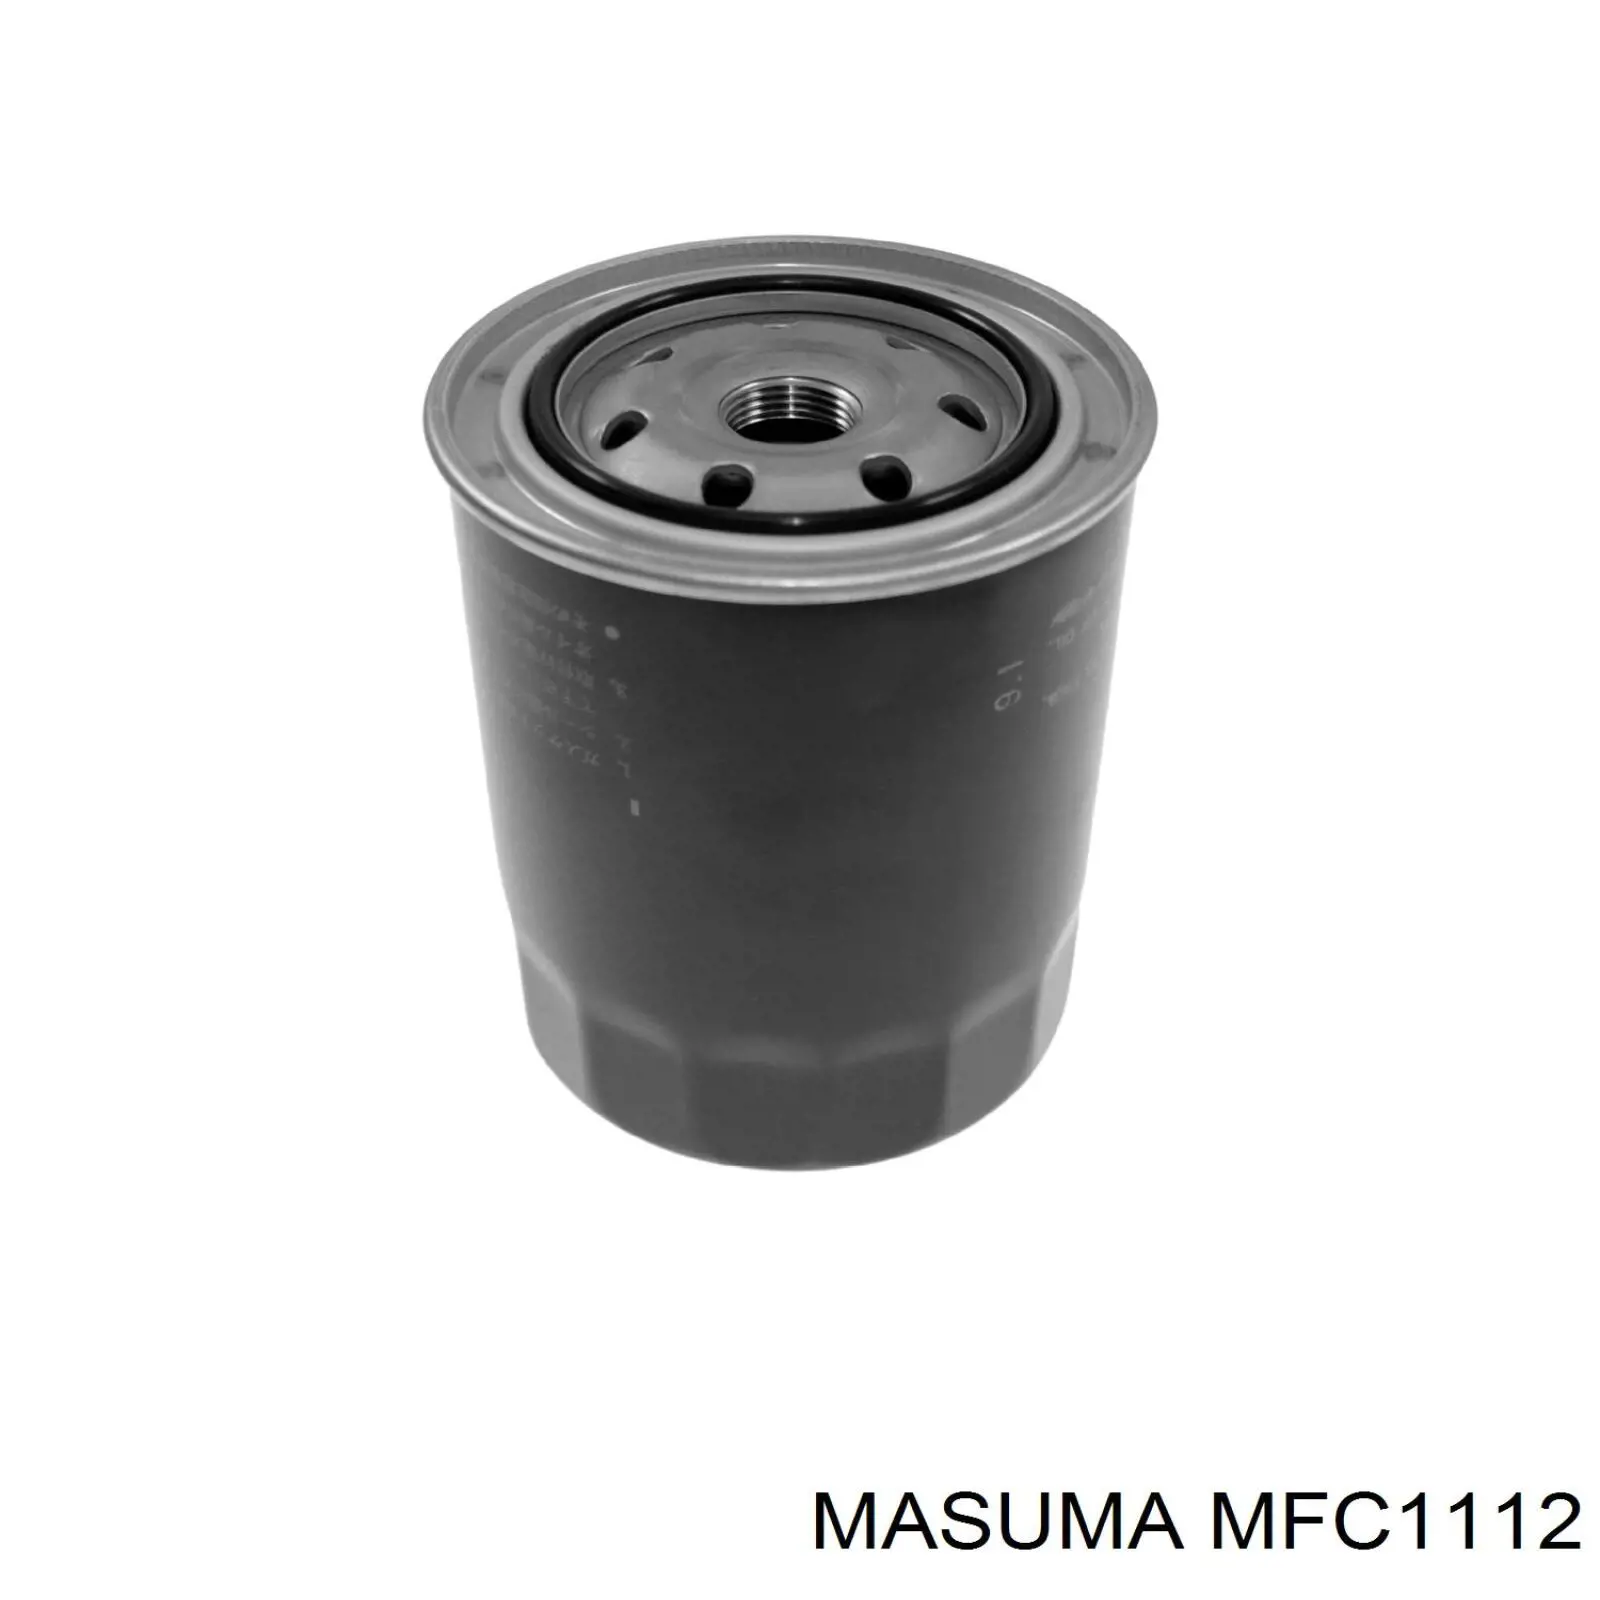 MFC1112 Masuma масляный фильтр